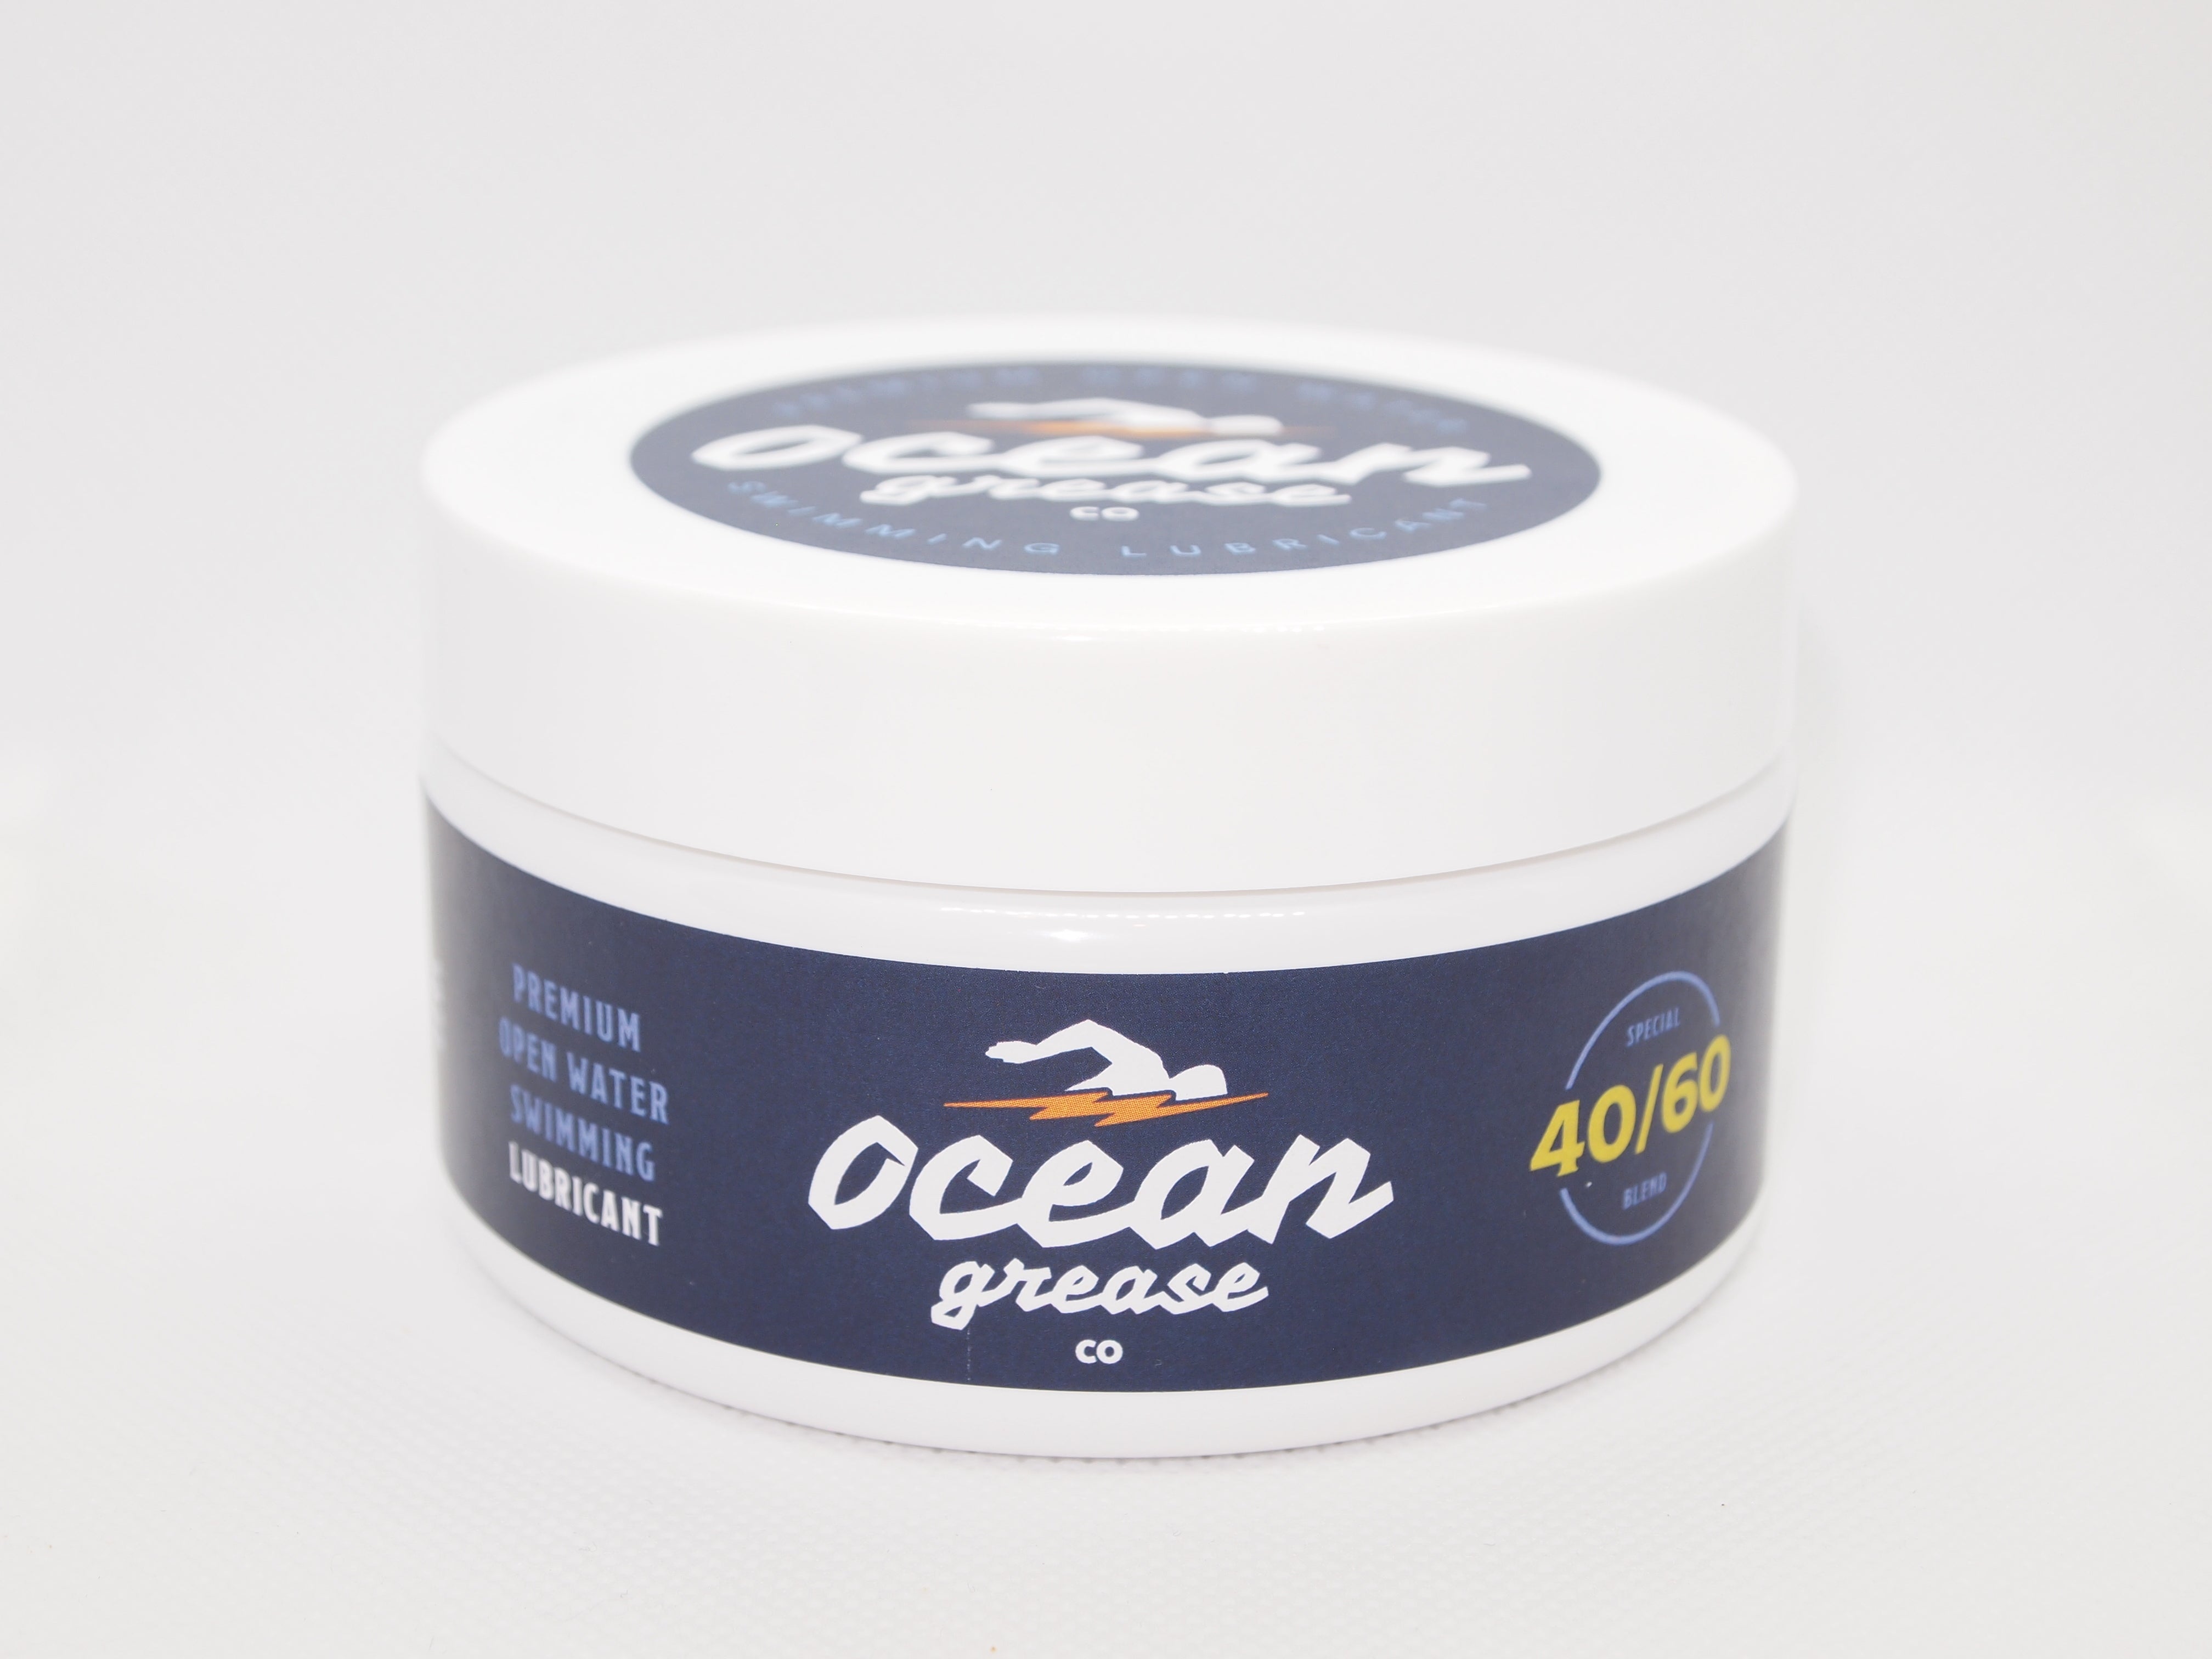 Ocean Grease 40/60 - 220g